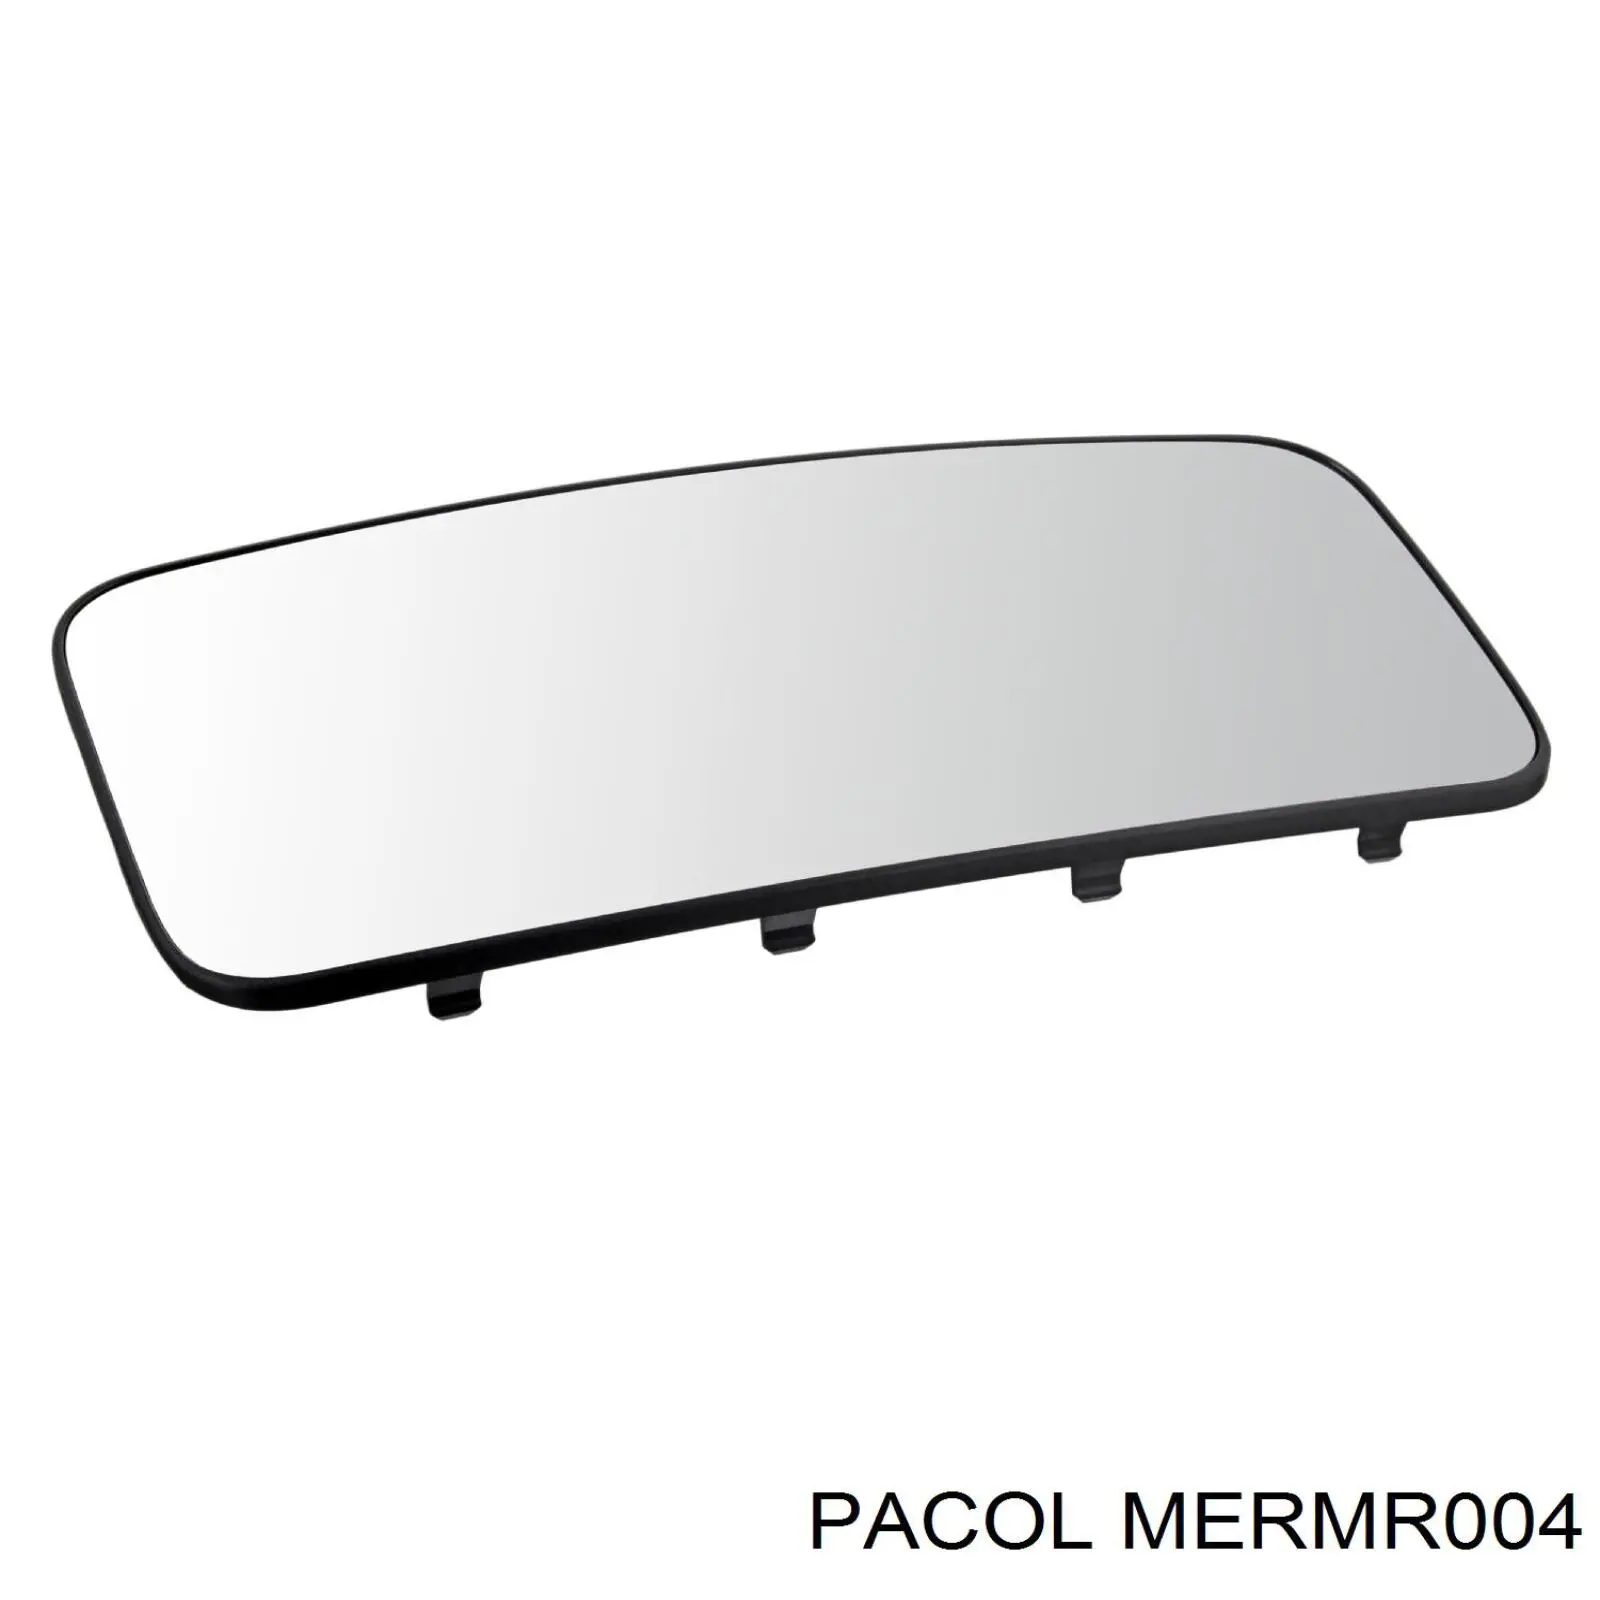 MERMR004 Pacol elemento espelhado do espelho de retrovisão